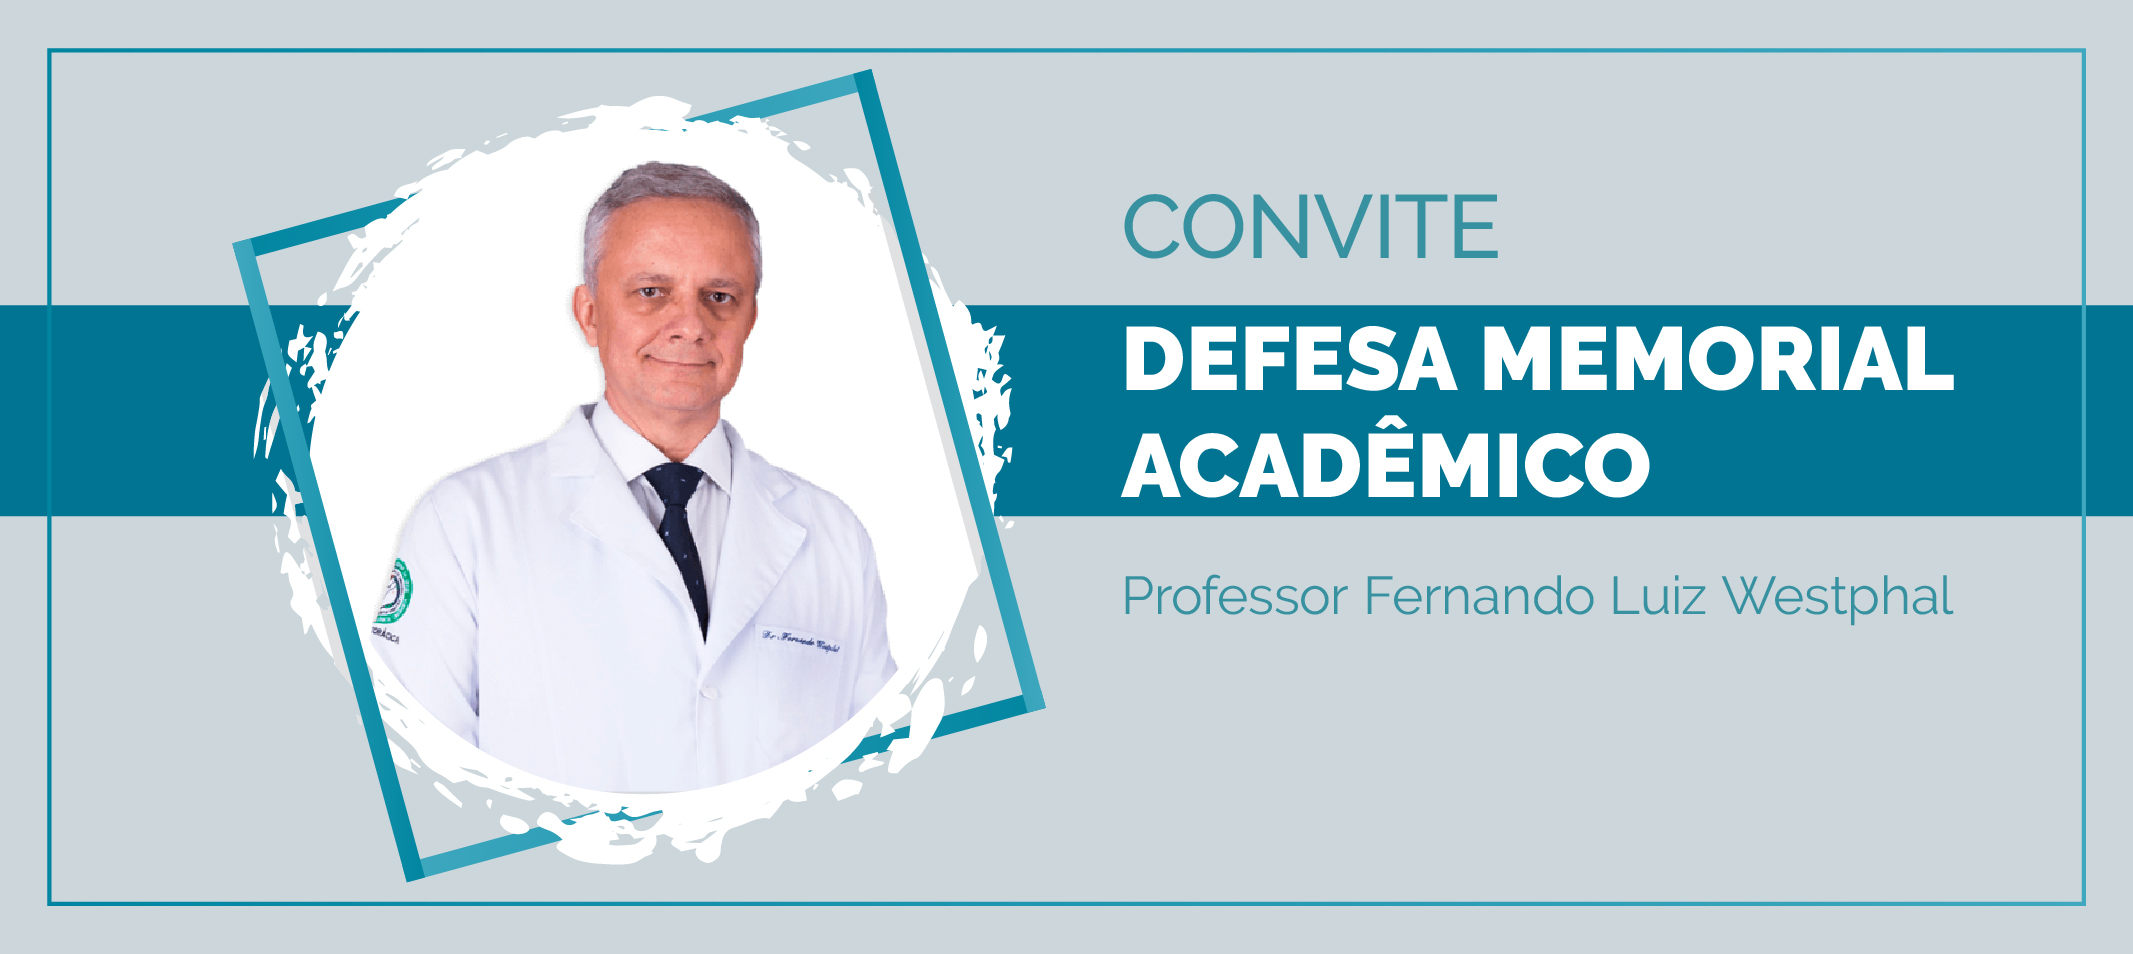 Professor Fernando Luiz Westphal, da Faculdade de Medicina, defende Memorial Acadêmico na quarta-feira, 17